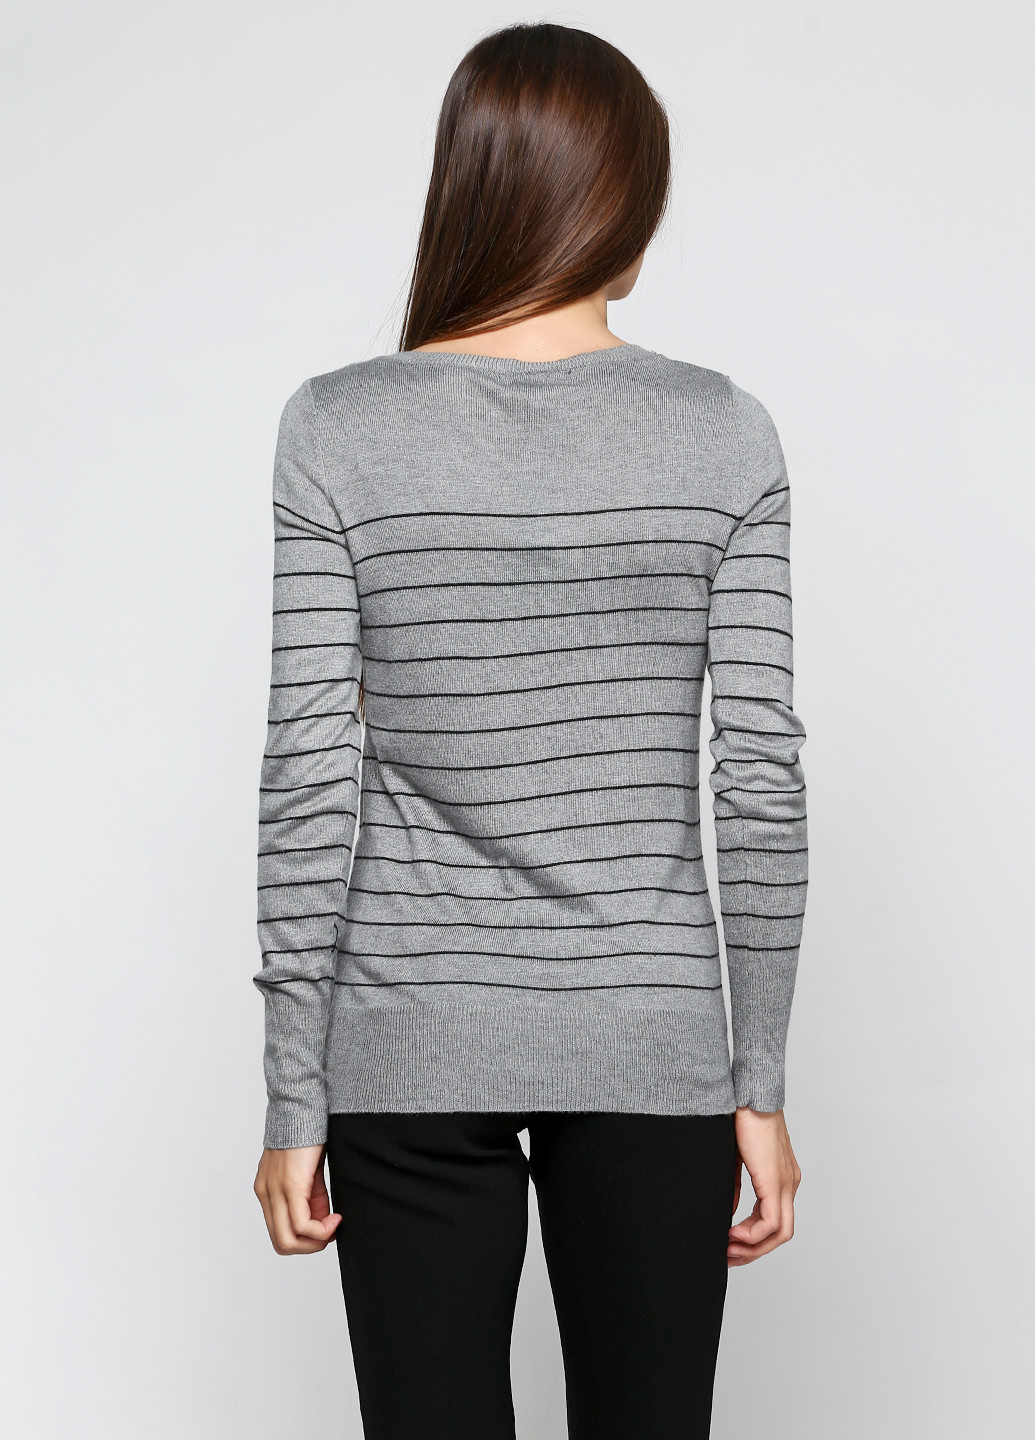 Серый демисезонный пуловер пуловер Mossimo Supply Co